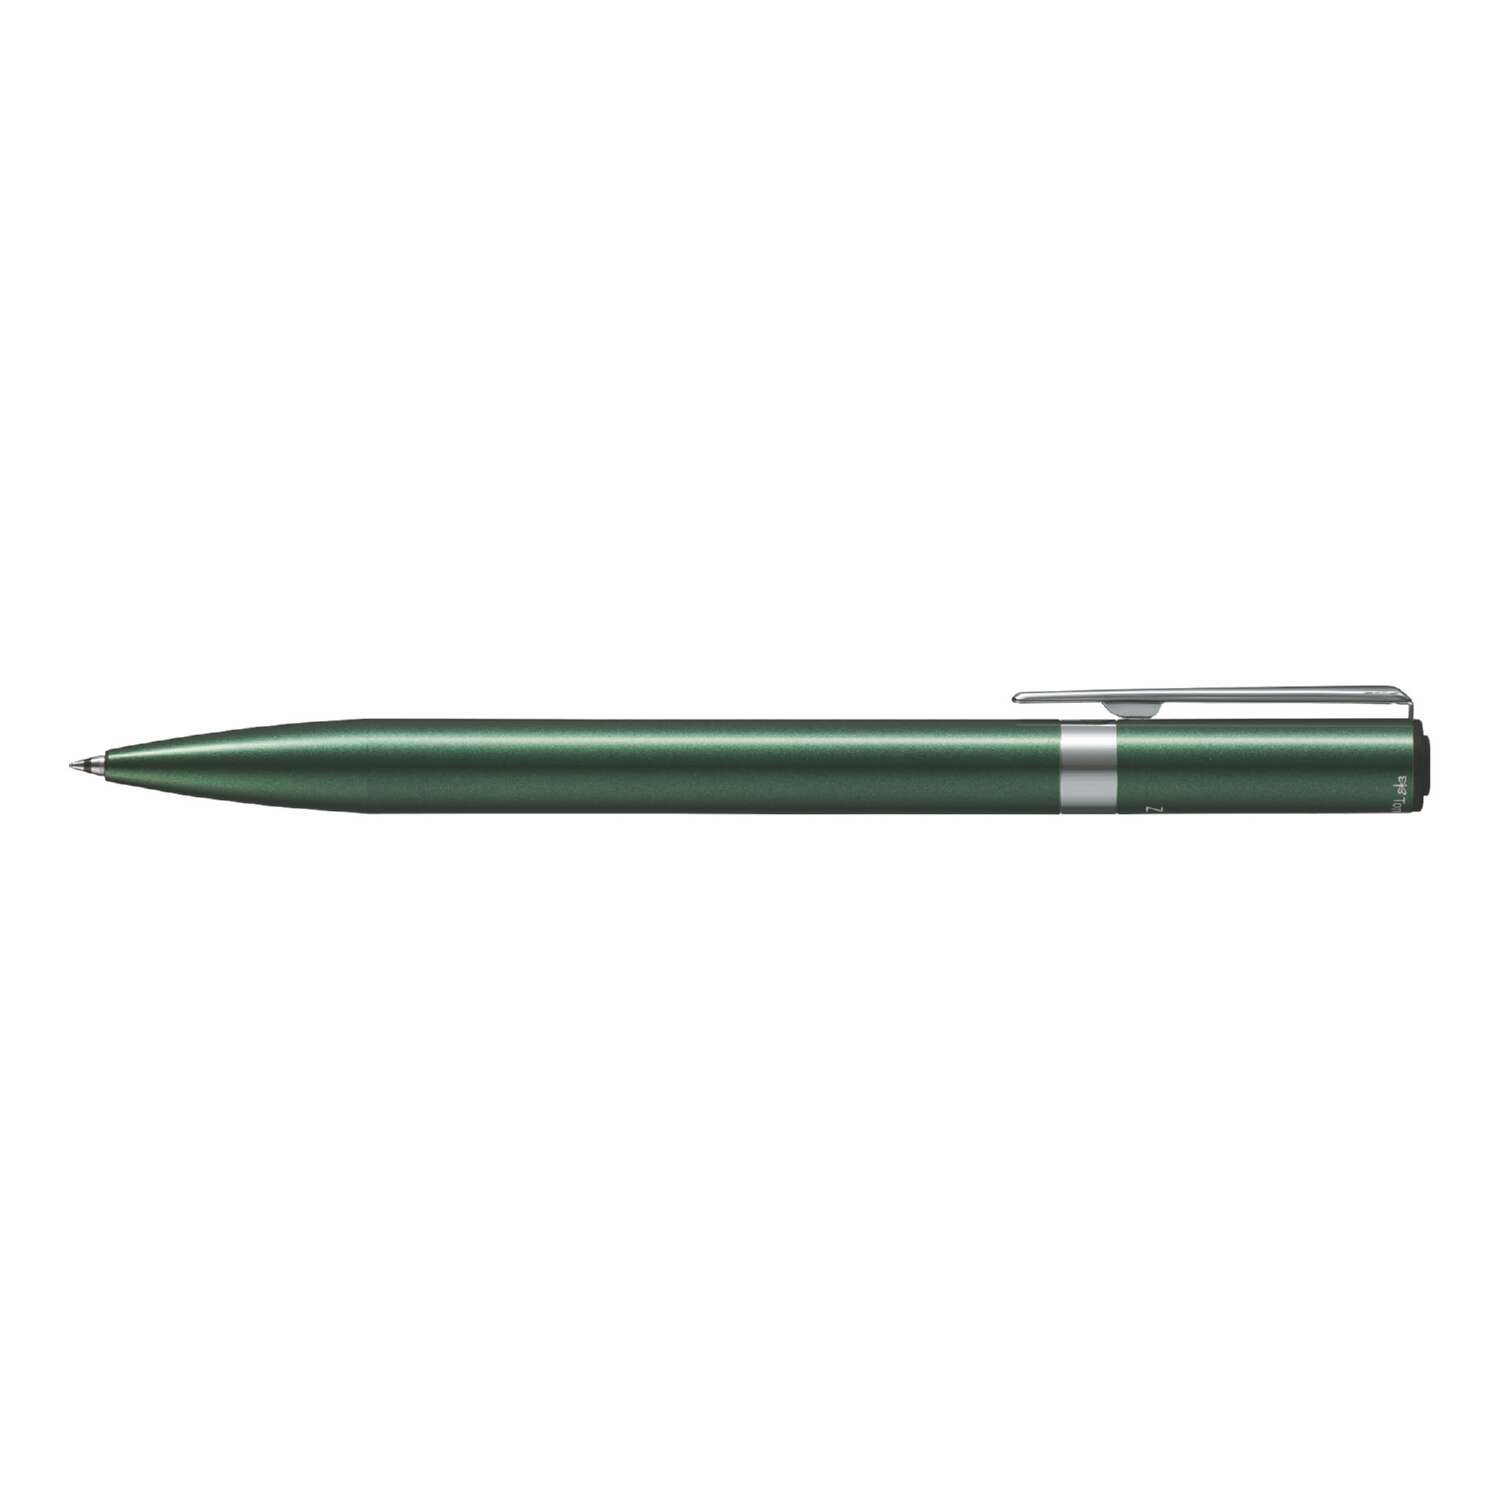 Ручка шариковая Tombow ZOOM L105 City черная корпус зеленый линия 0.7 мм подарочная упаковка - фото 2